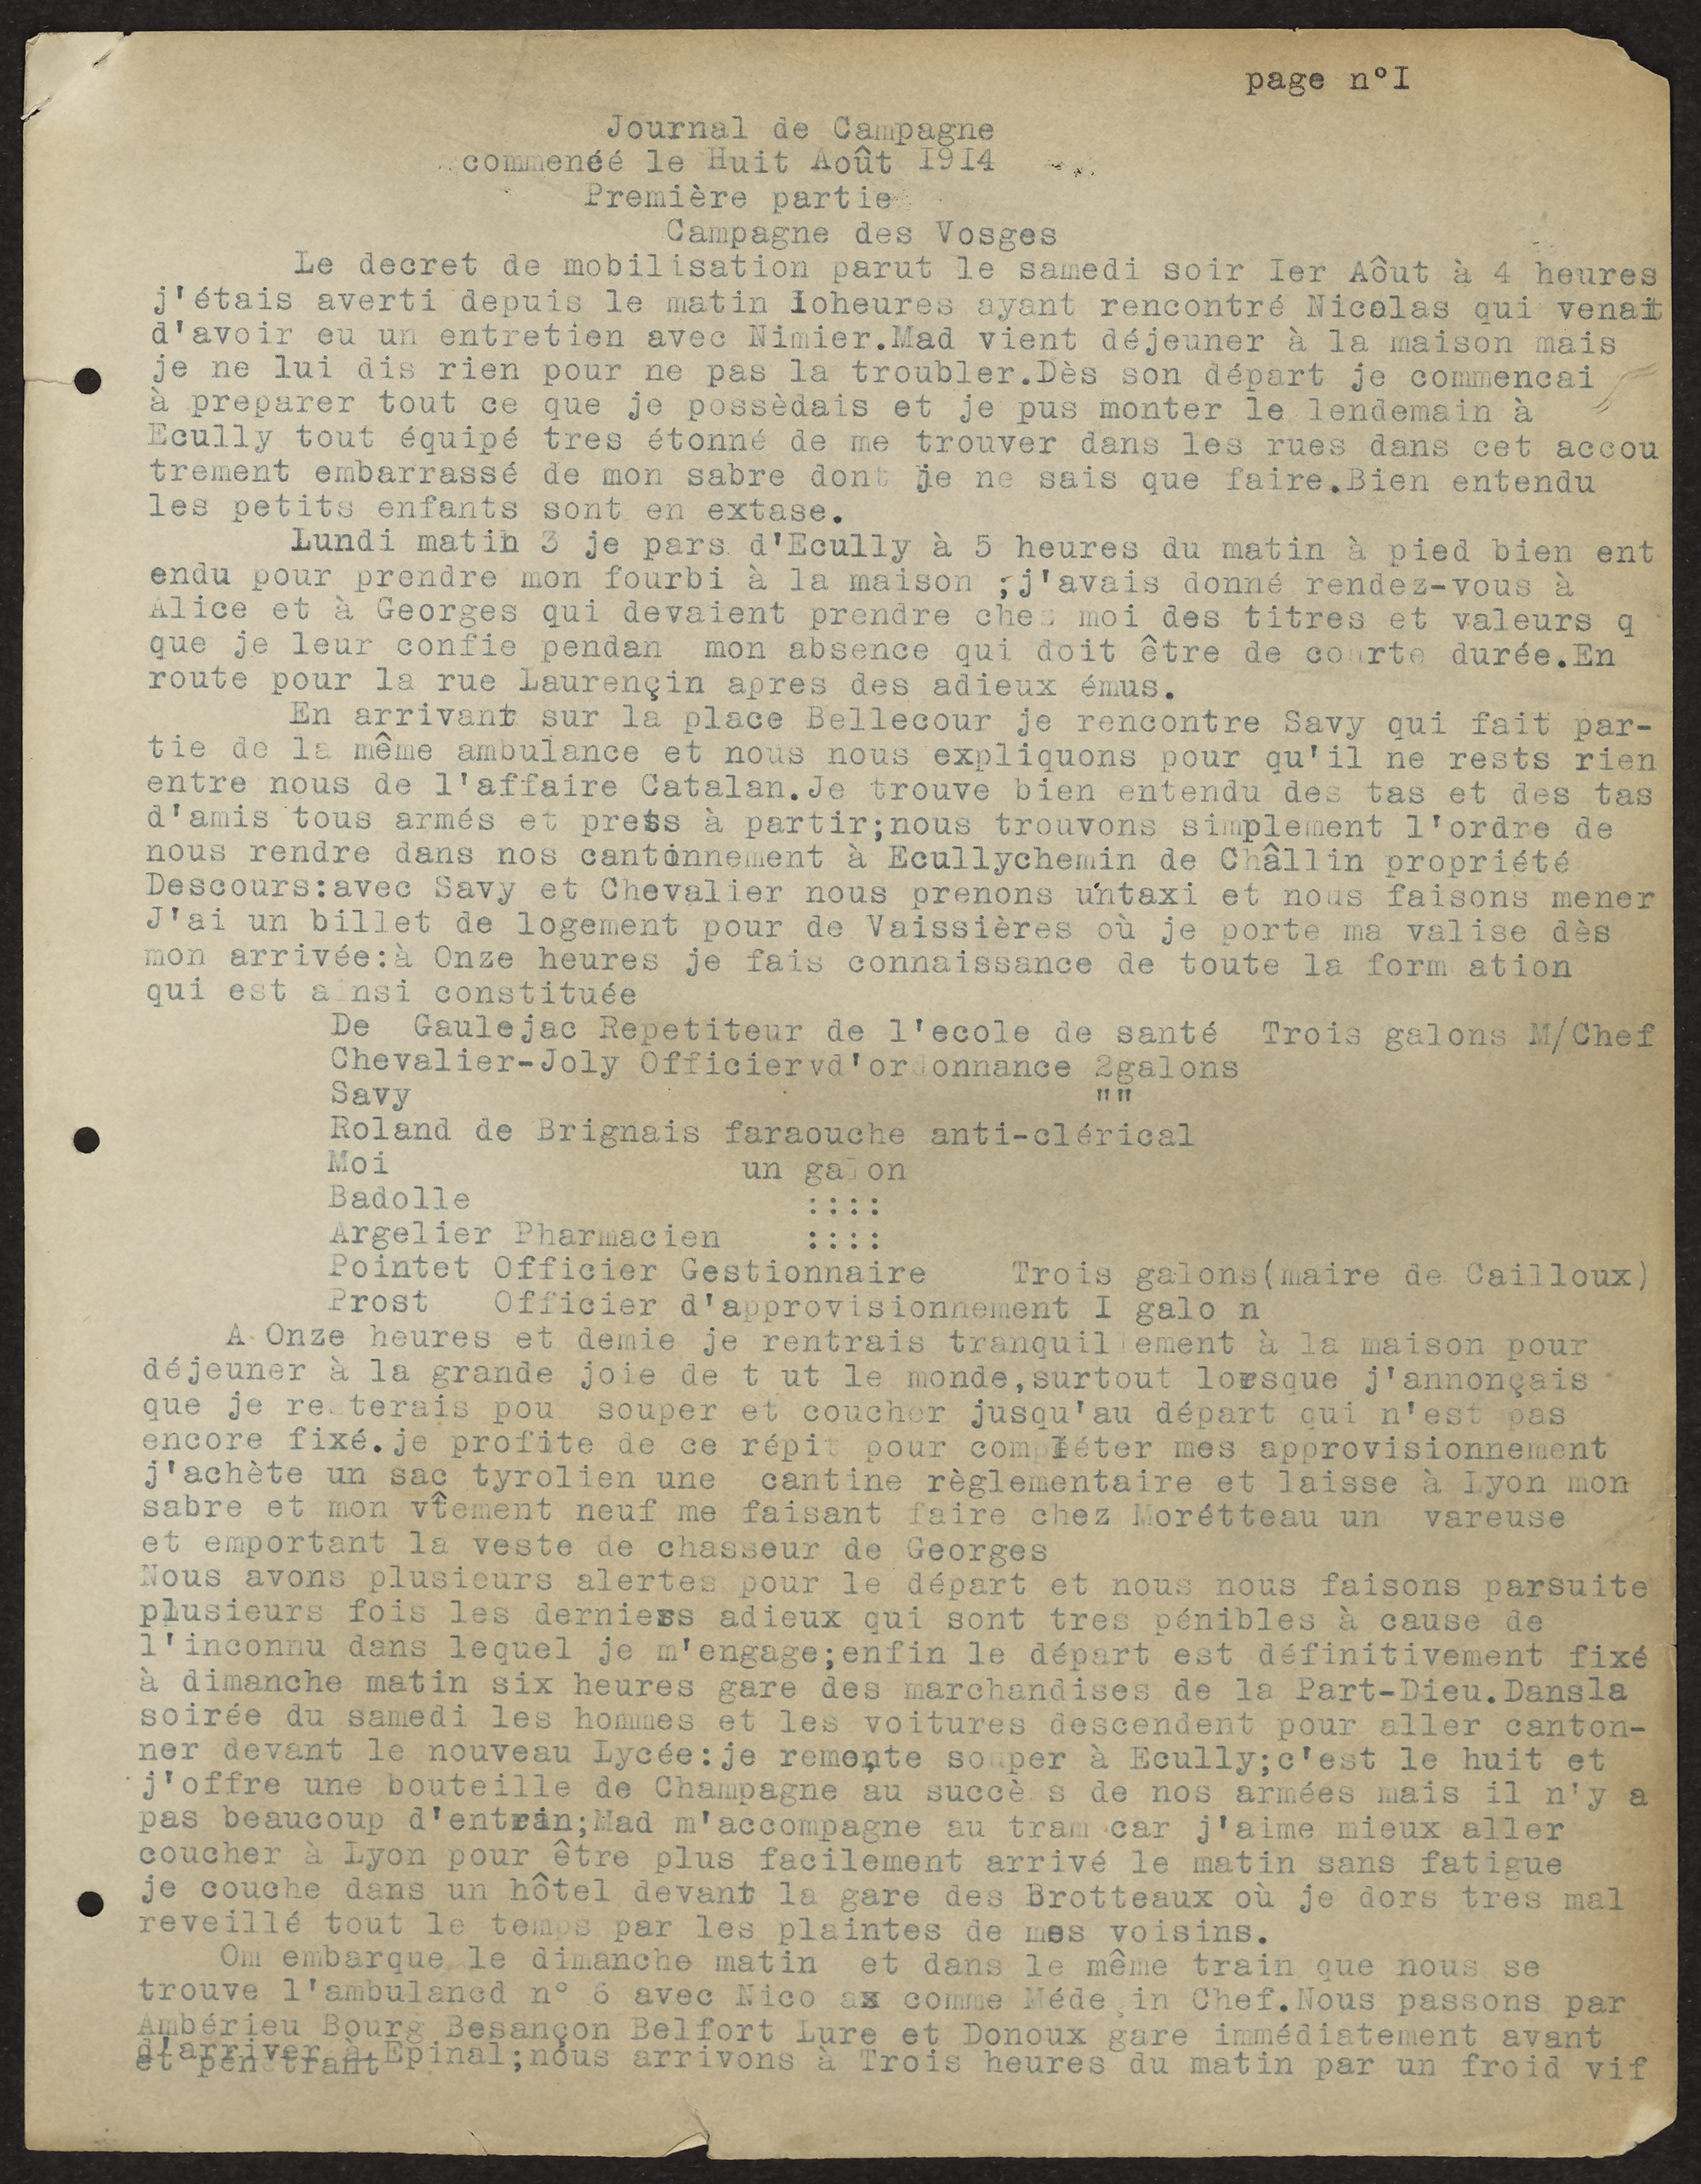 Journal de campagne attribué à Auguste Verrière, médecin chirurgien lyonnais, 1er août 1914 - 1II506